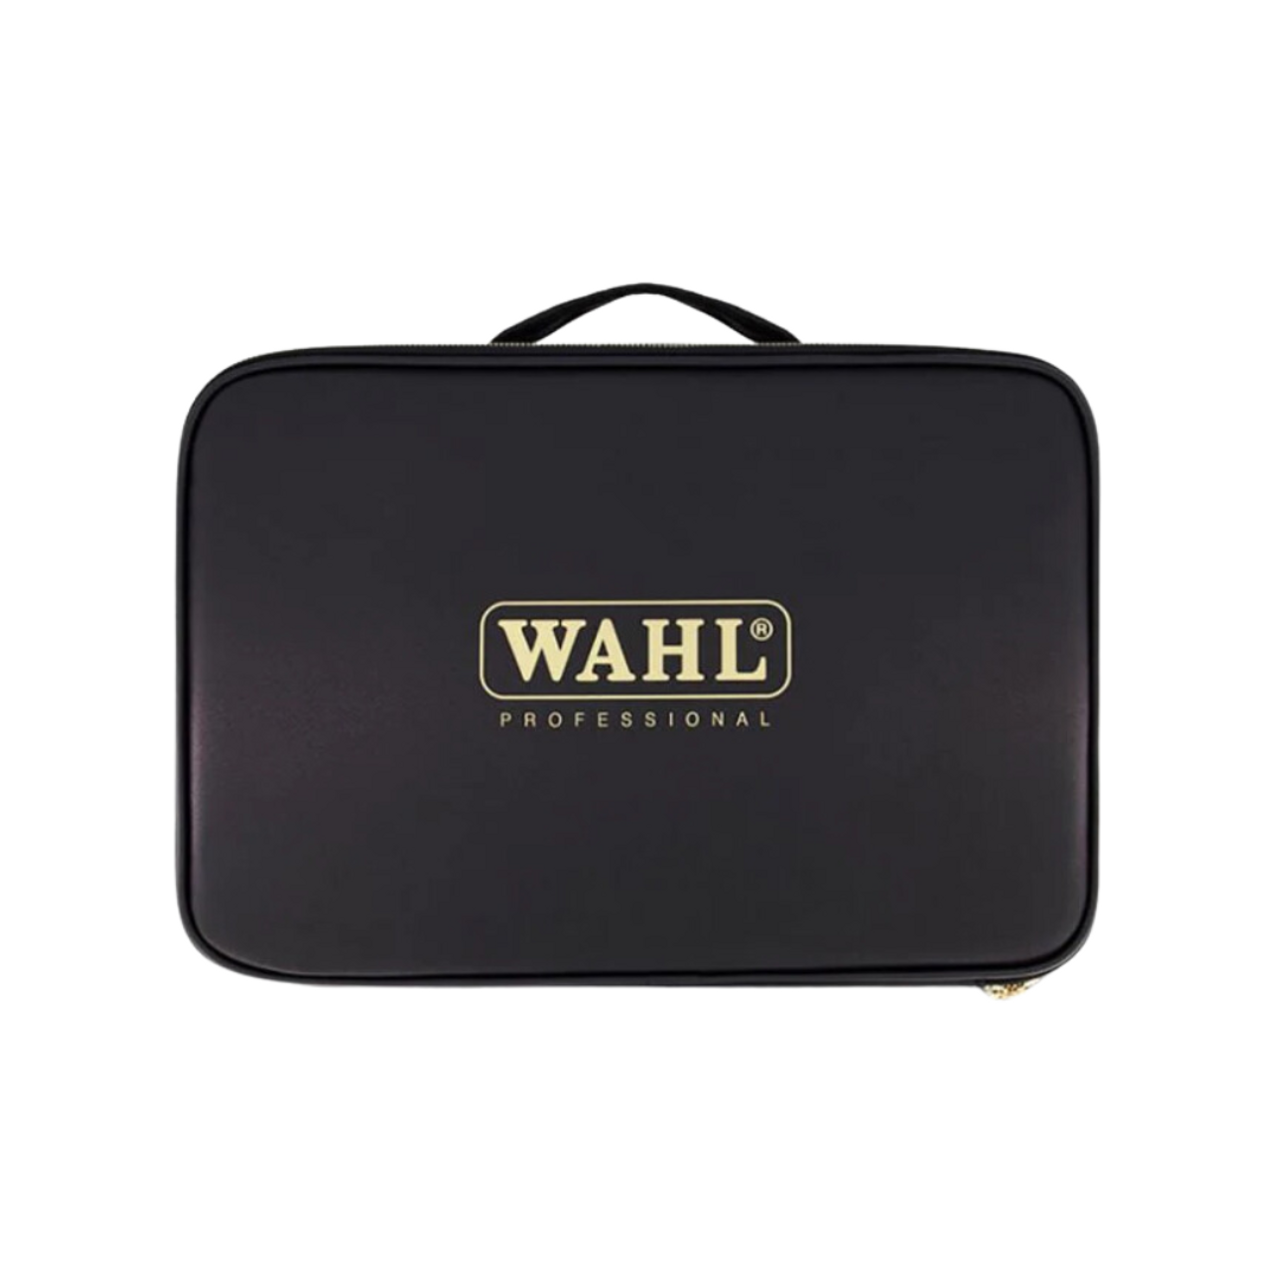 Wahl Magic Clip, Beret, Black & Gold Case Combo